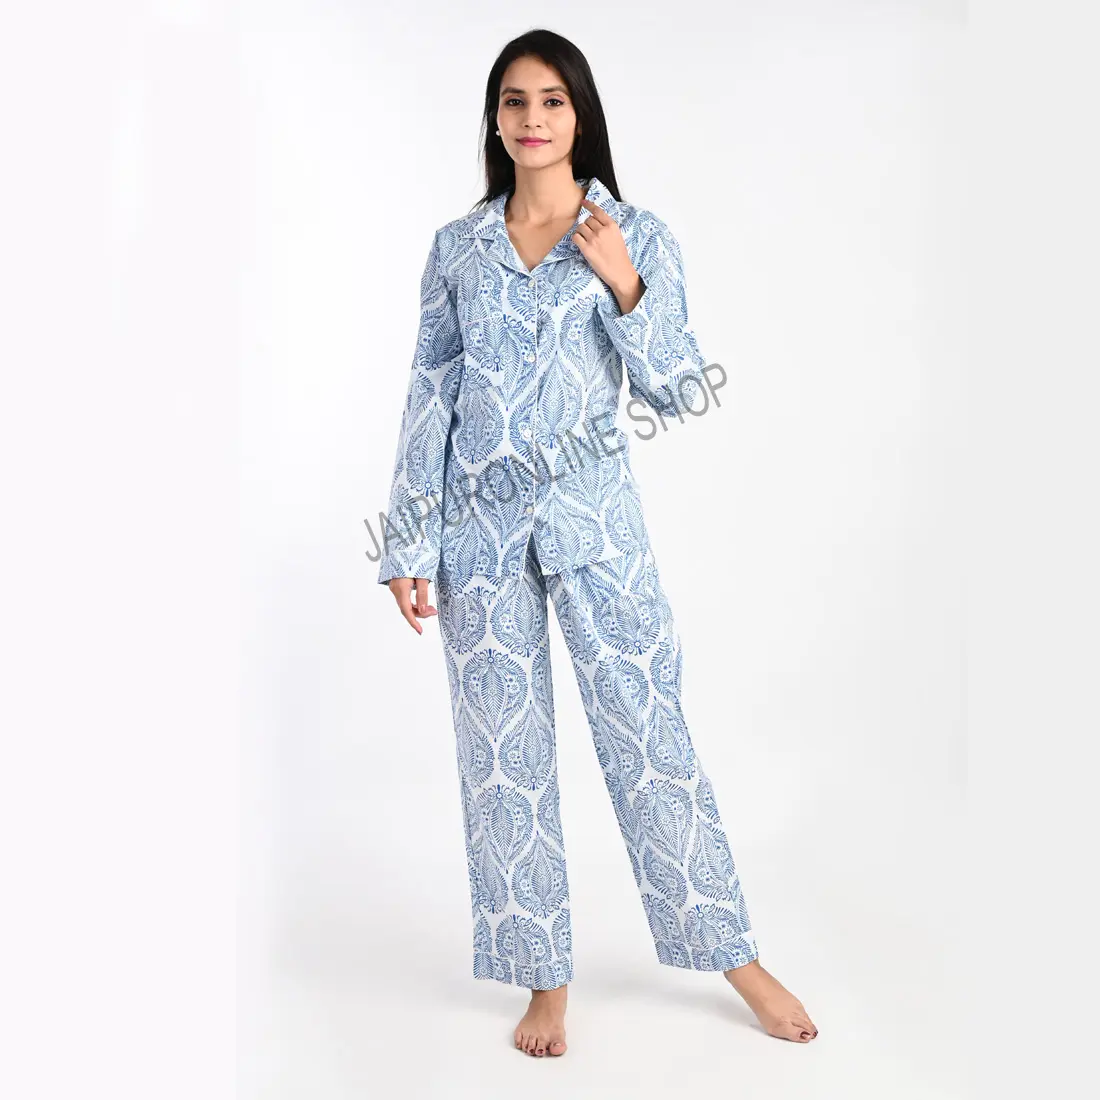 New Cute Looking Nighty Wholesaler 3 Pieces Set Women Long Sleeve Sleepwear Pajamas